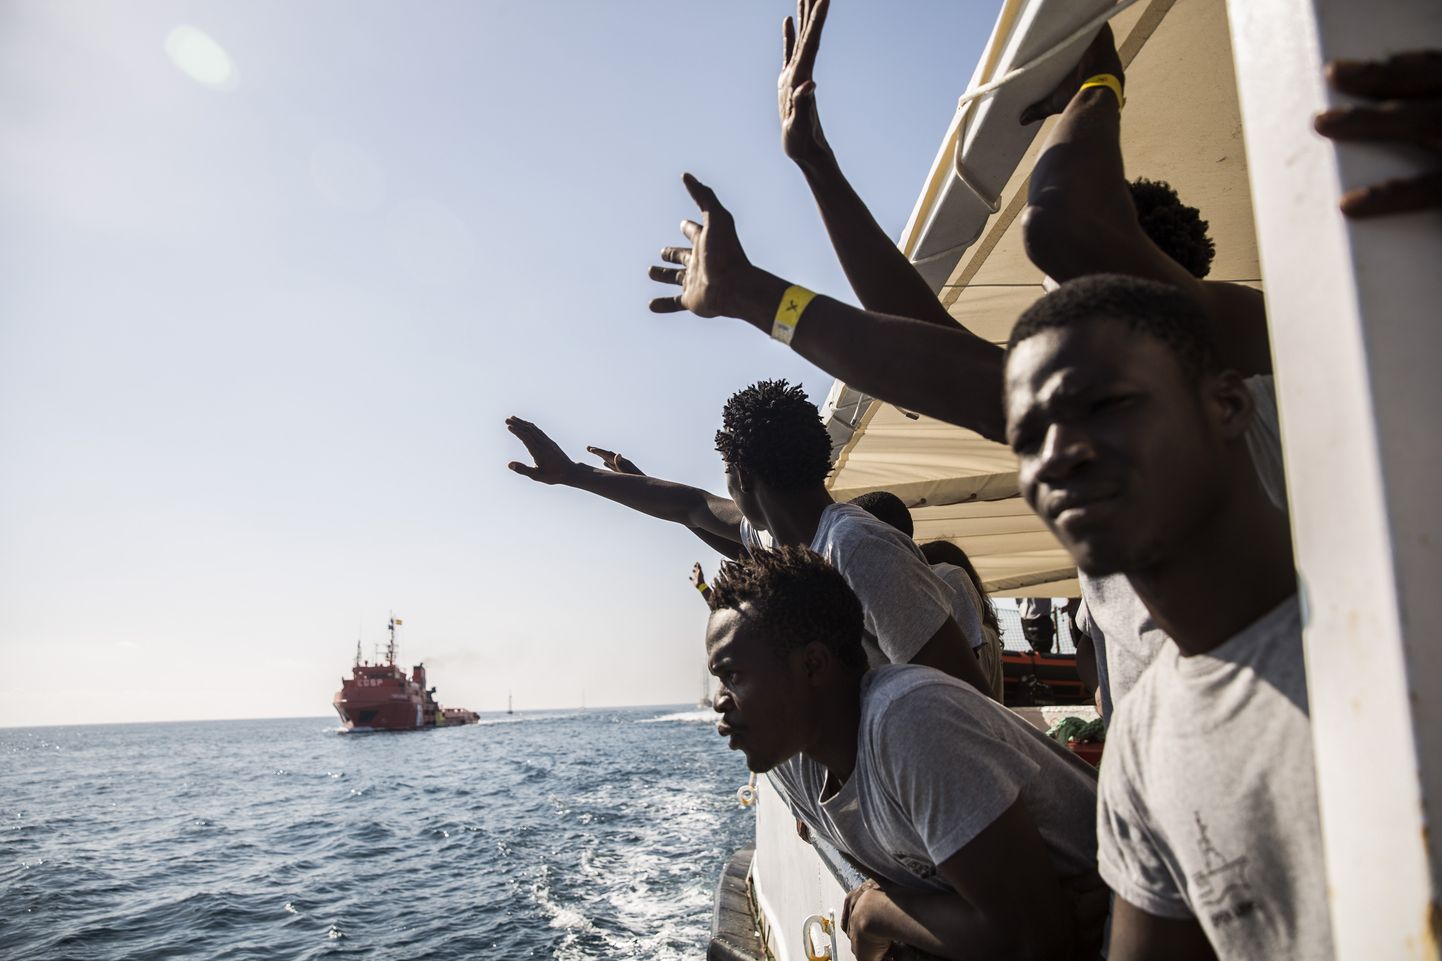 Migrandid laevaga teel.